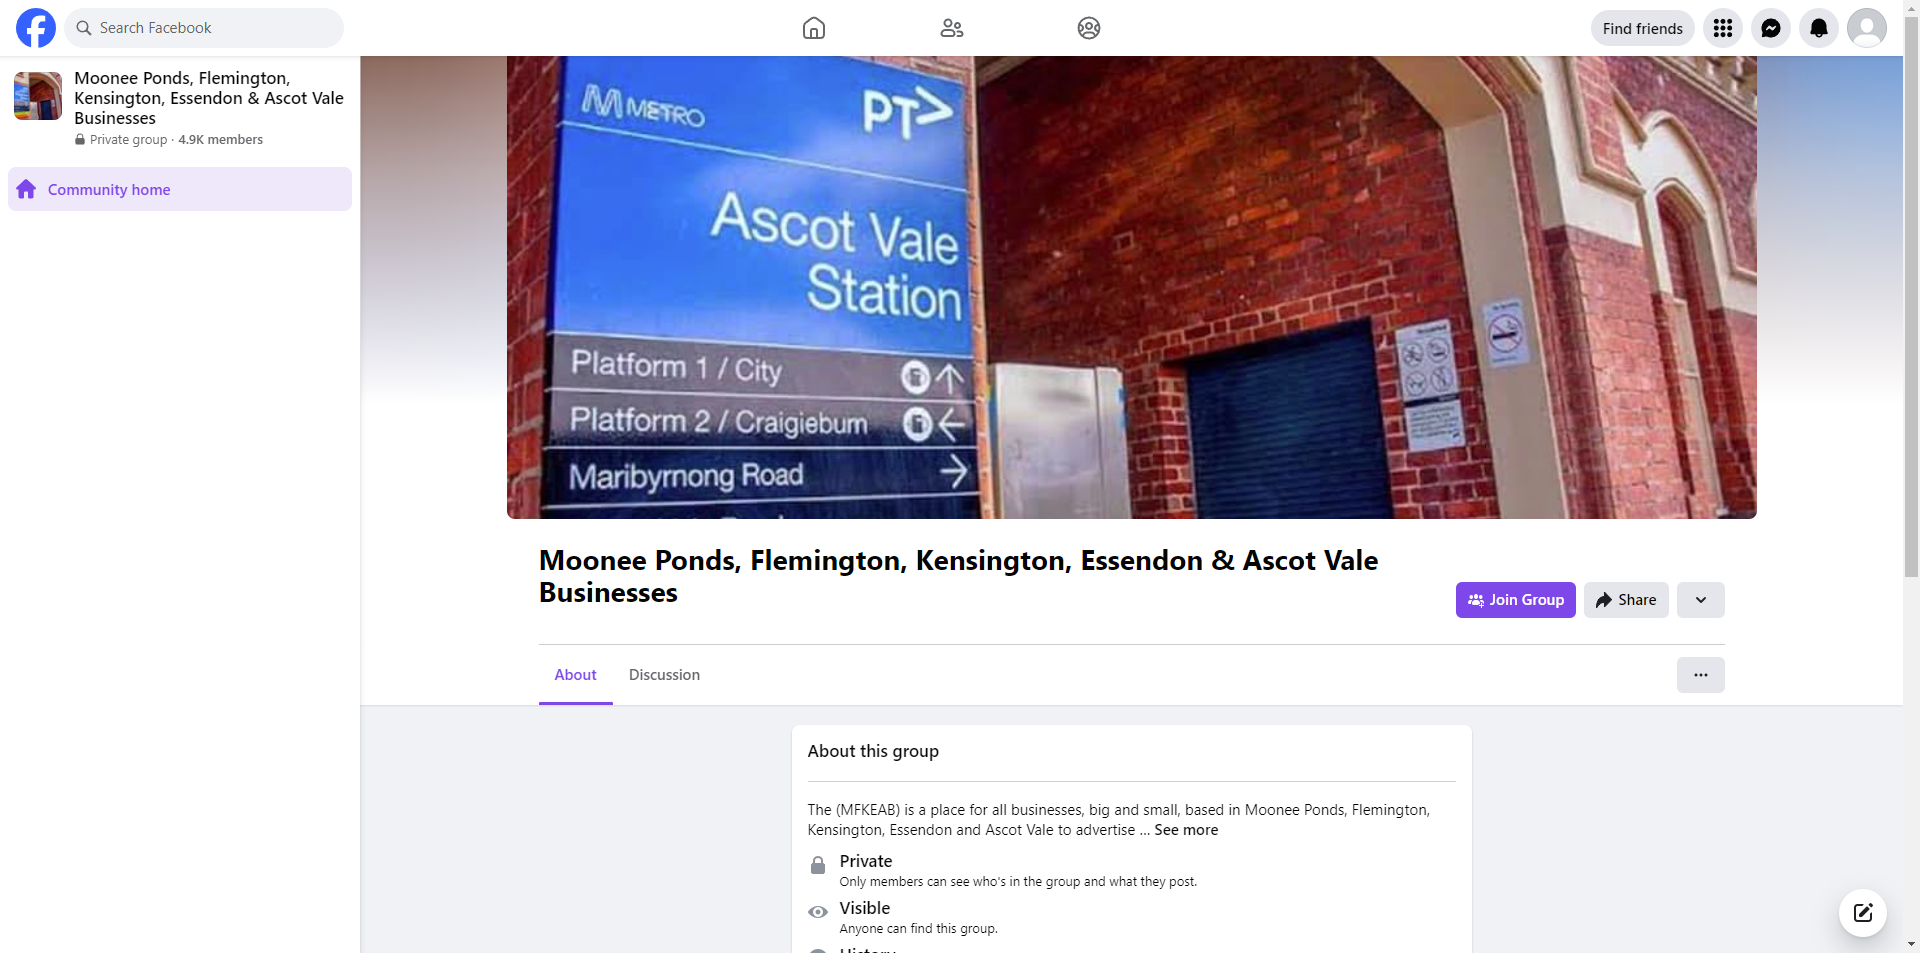 Moonee Ponds, Flemington, Kensington, Essendon & Ascot Vale Businesses